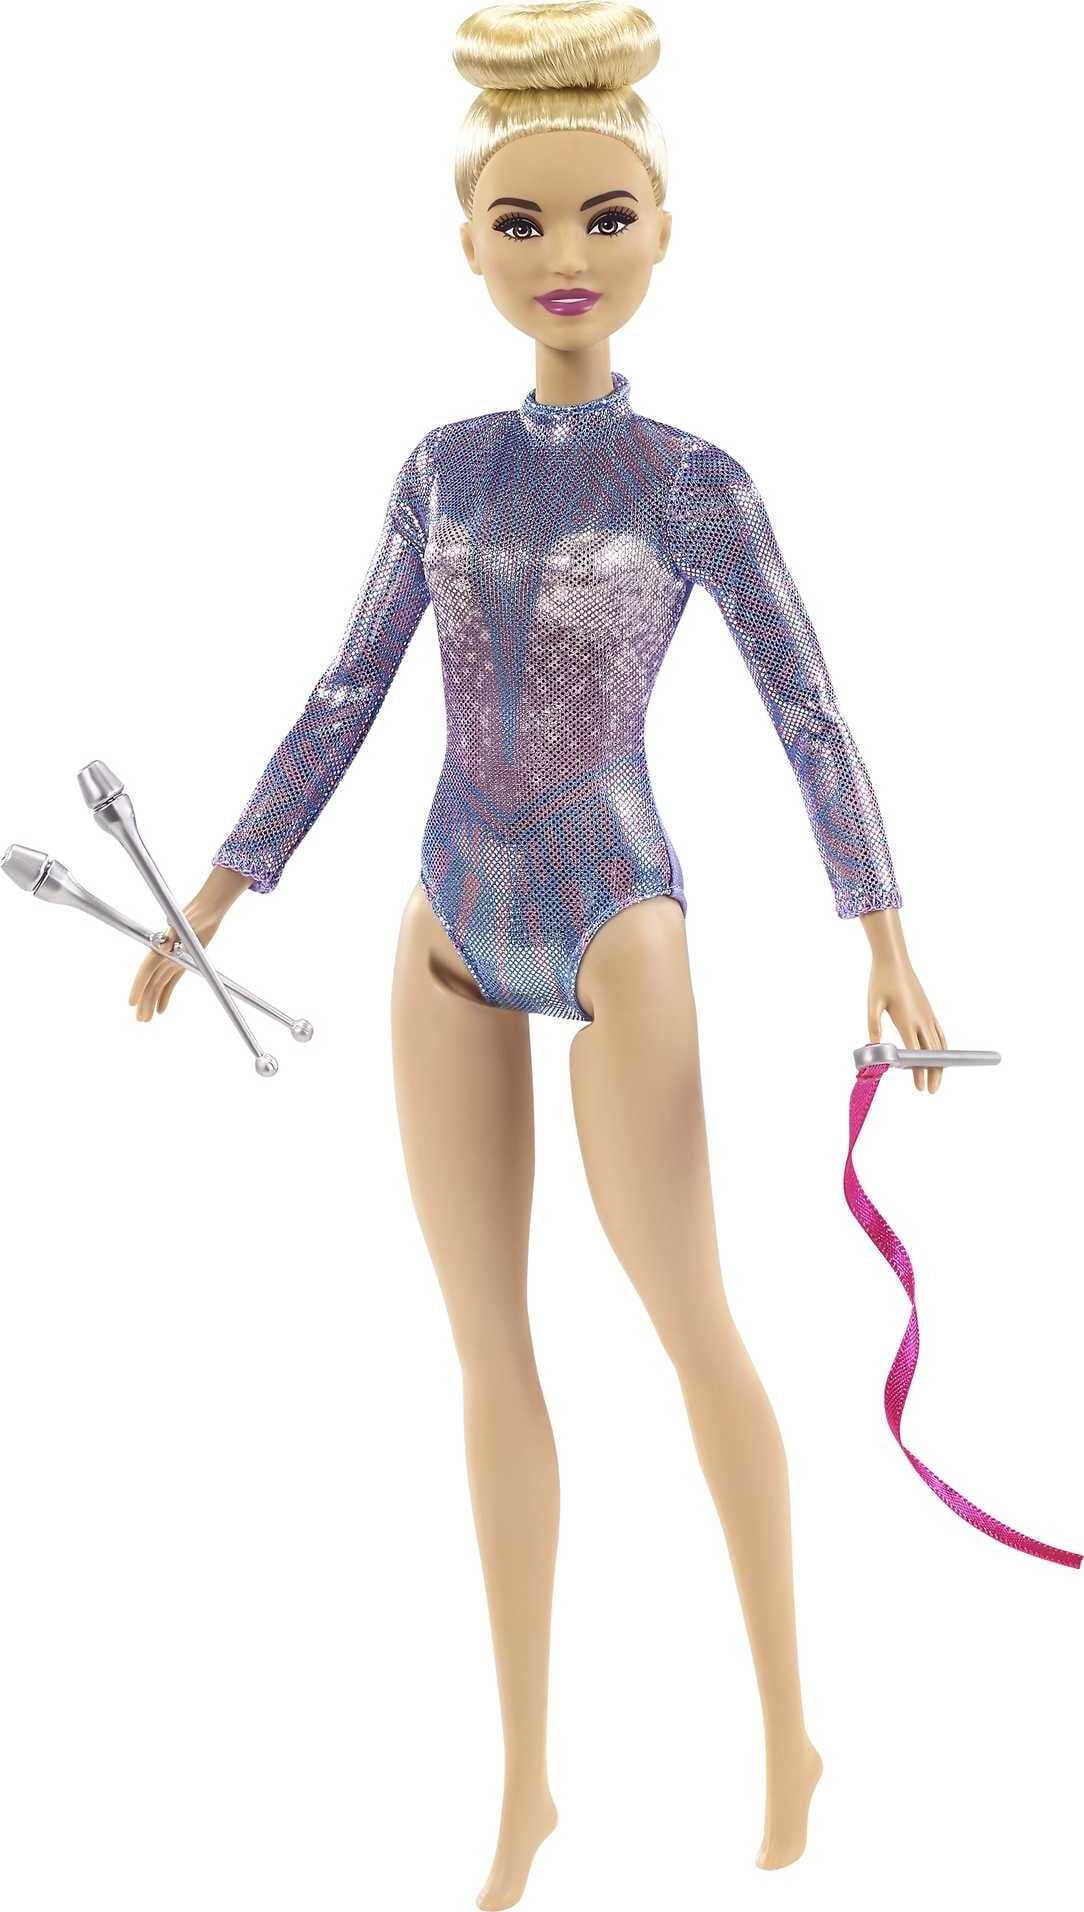 Barbie Rhythmic Gymnast Fashion Doll Dressed in Shimmery Leotard with  Blonde Hair & Brown Eyes